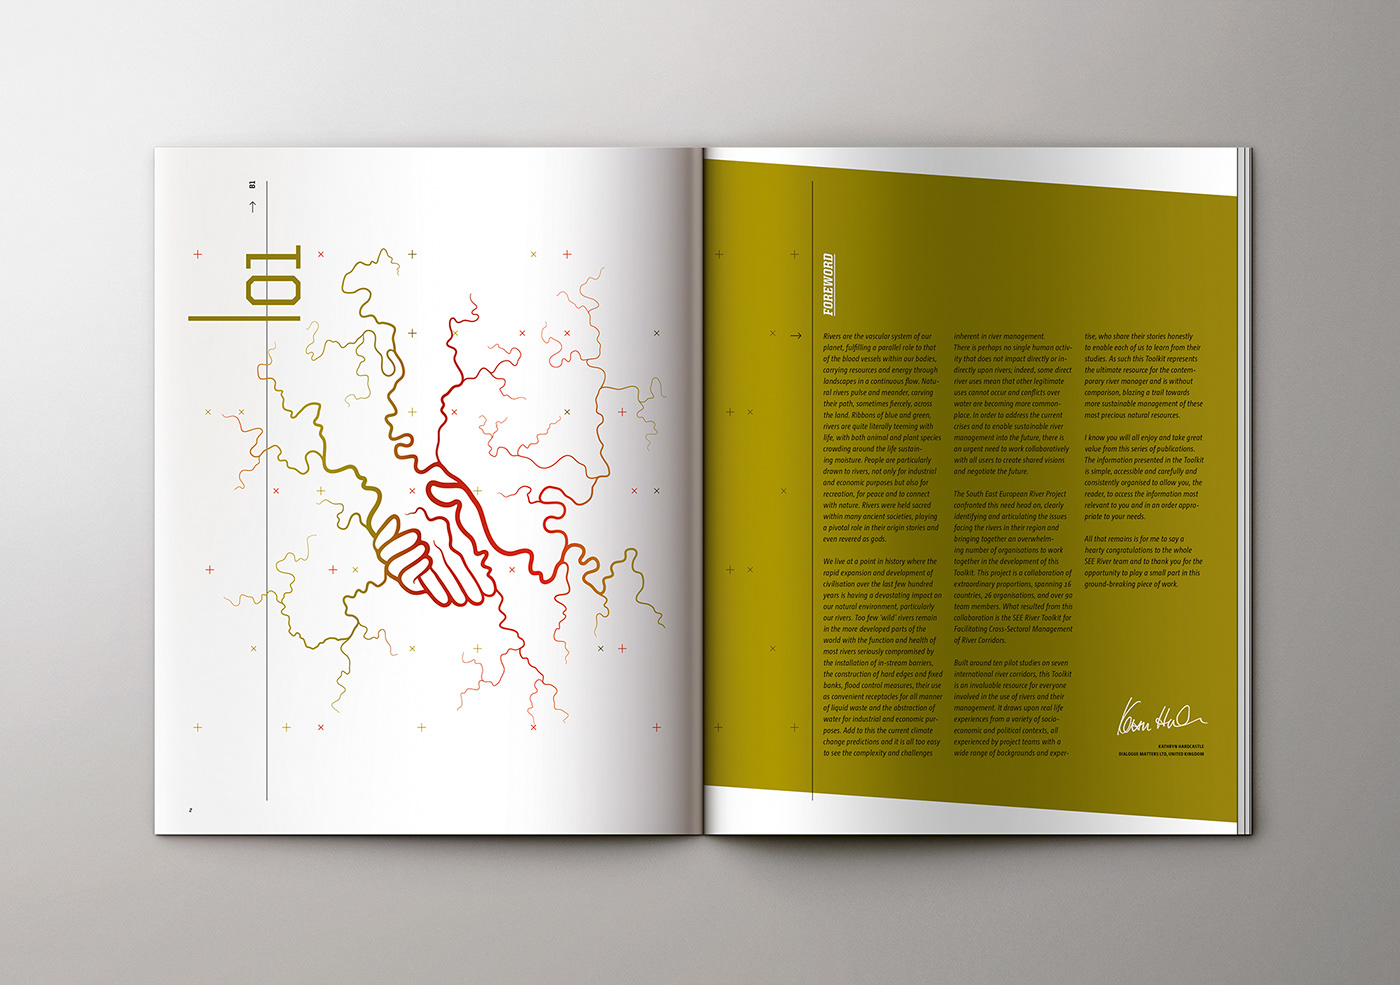 studio360 vladan srdic ljubljana slovenia Bookdesign design book editorial graphic design 